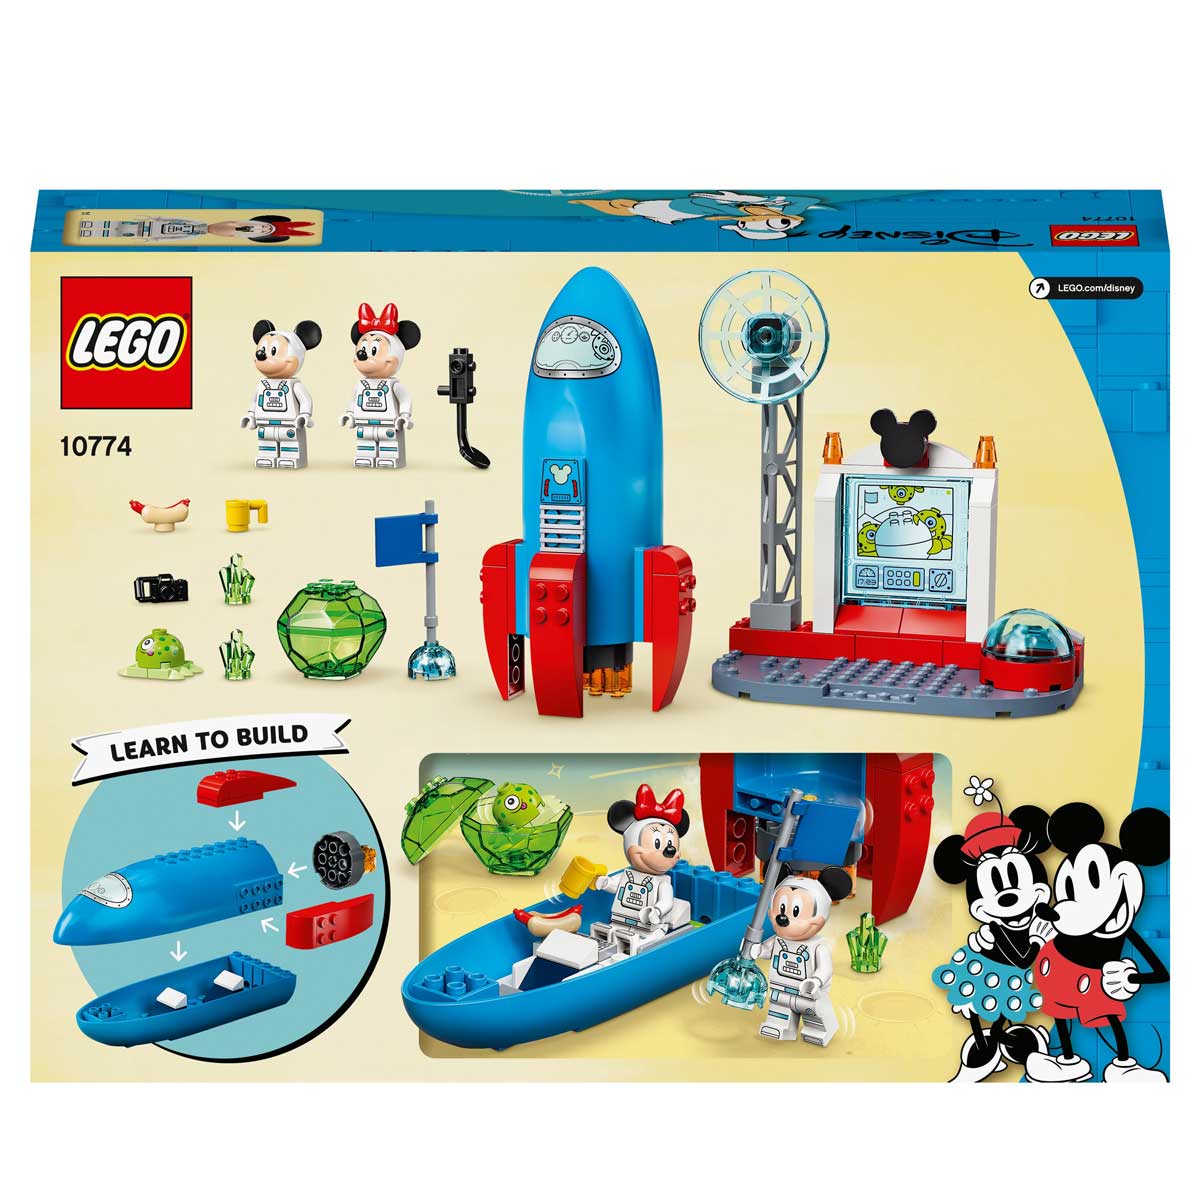 10774 LEGO Disney Il razzo spaziale di Topolino e Minnie